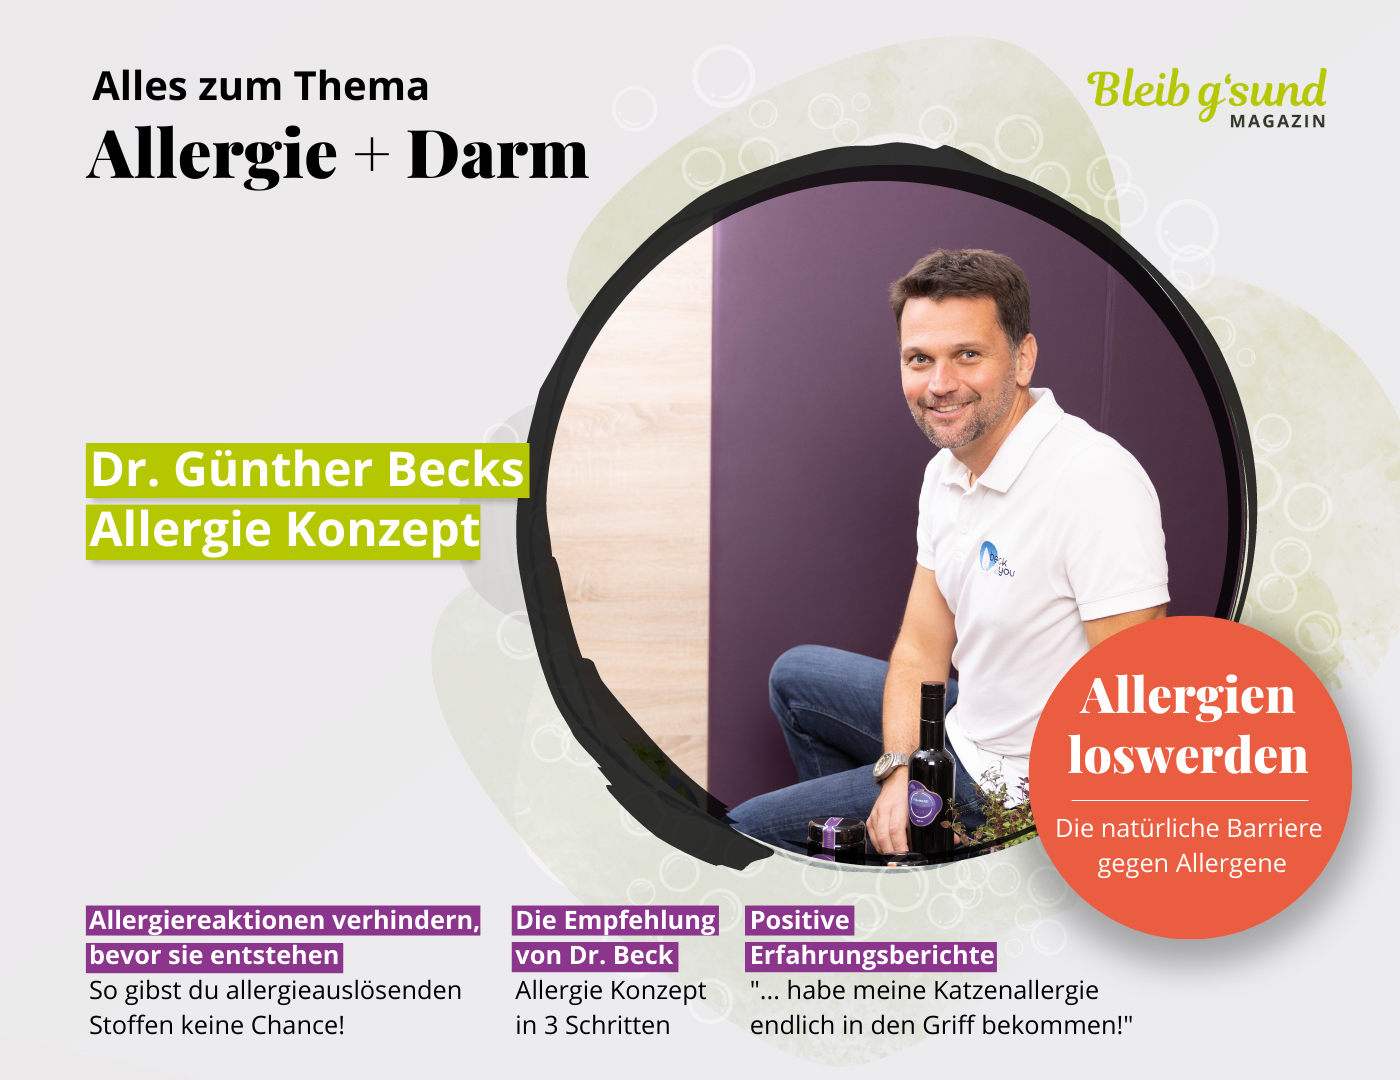 Allergie + Darm - Dr. Günther Beck über Allergien